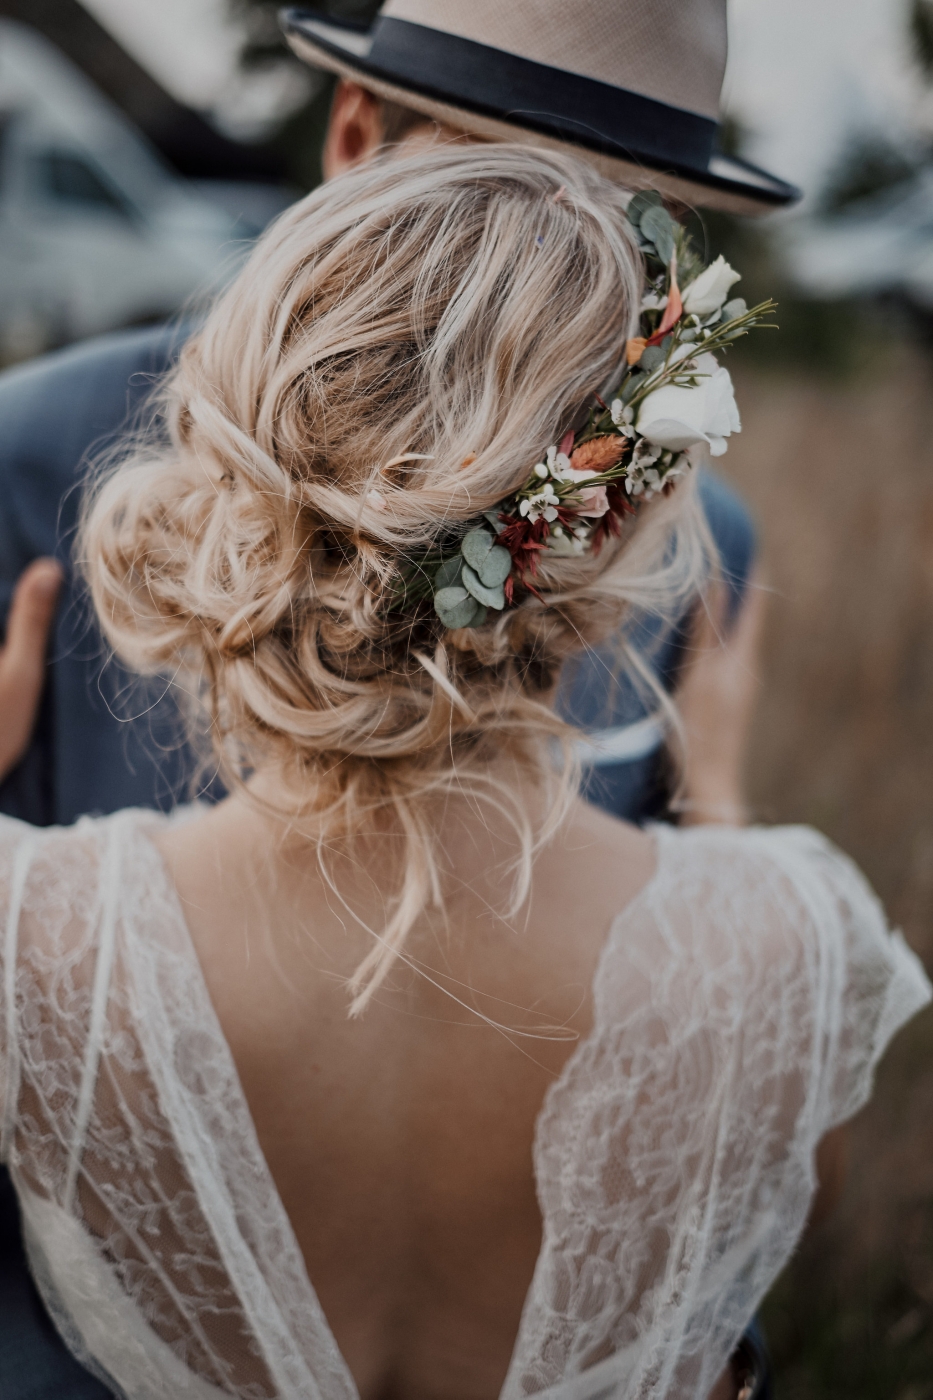 Braut mit Blumen im Haar und Spitzen-Hochzeitskleid umarmt Bräutigam; Hochzeitsfotografie im Freien.